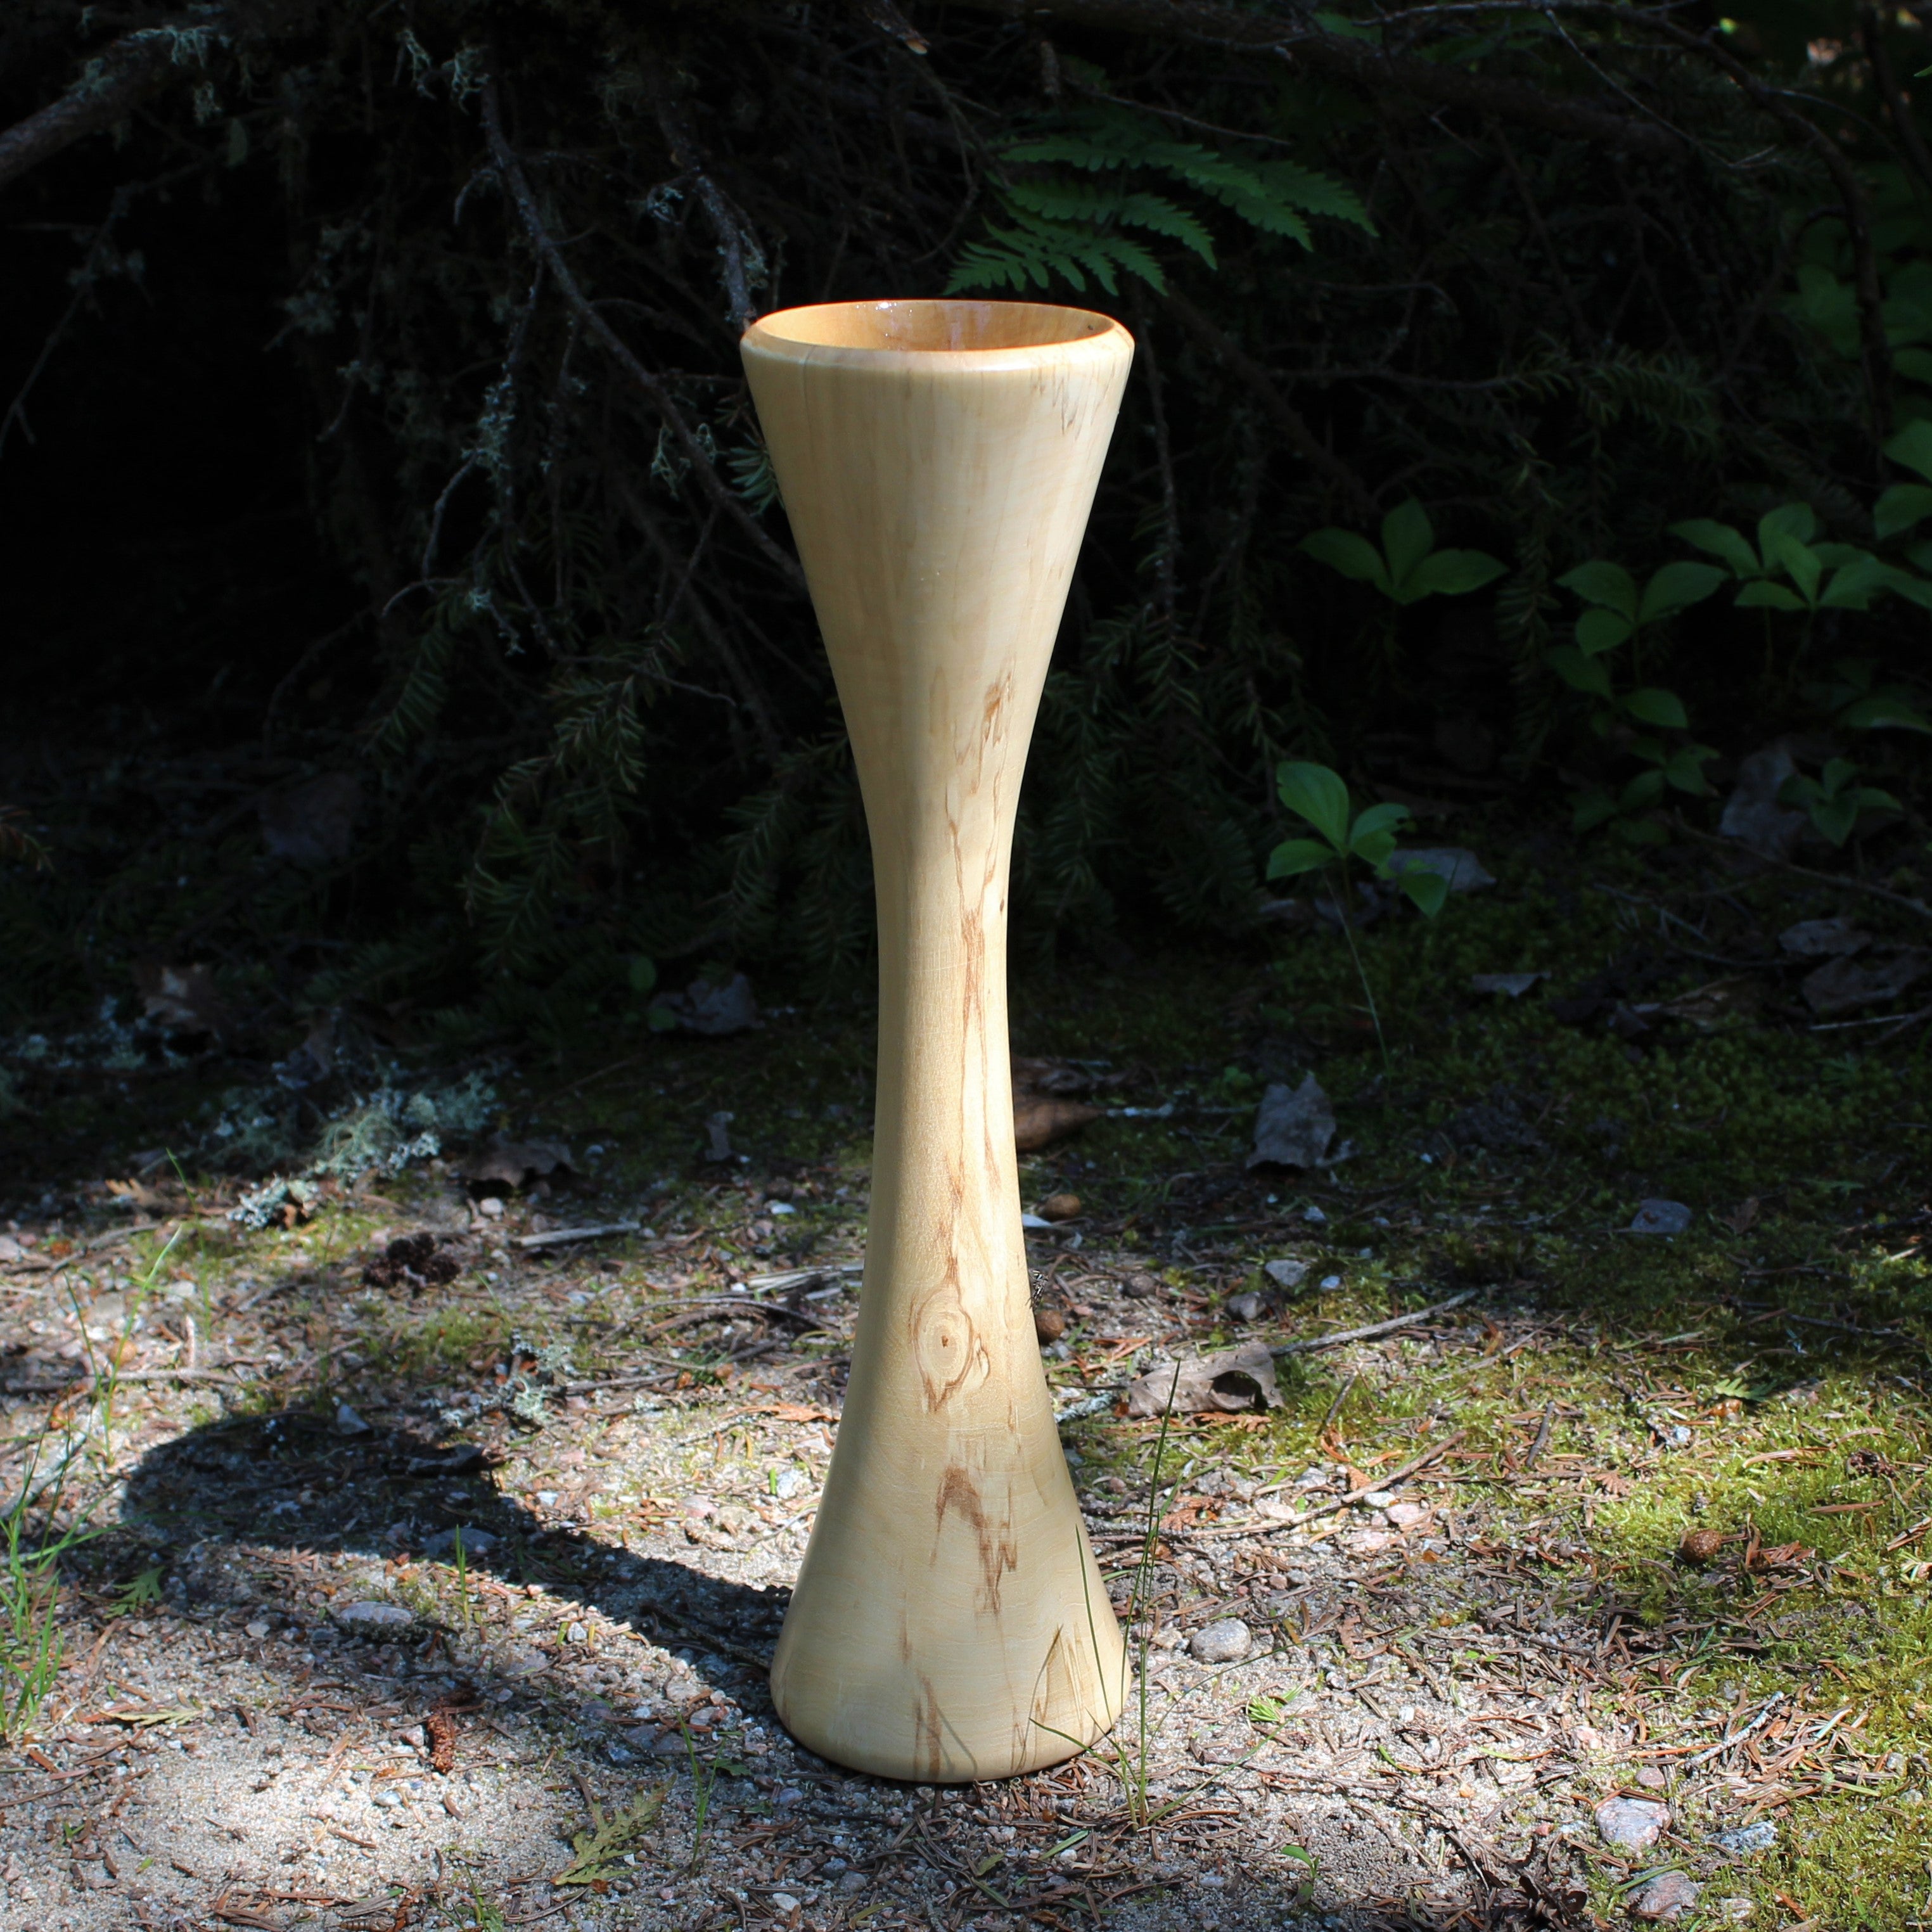 poplar vase